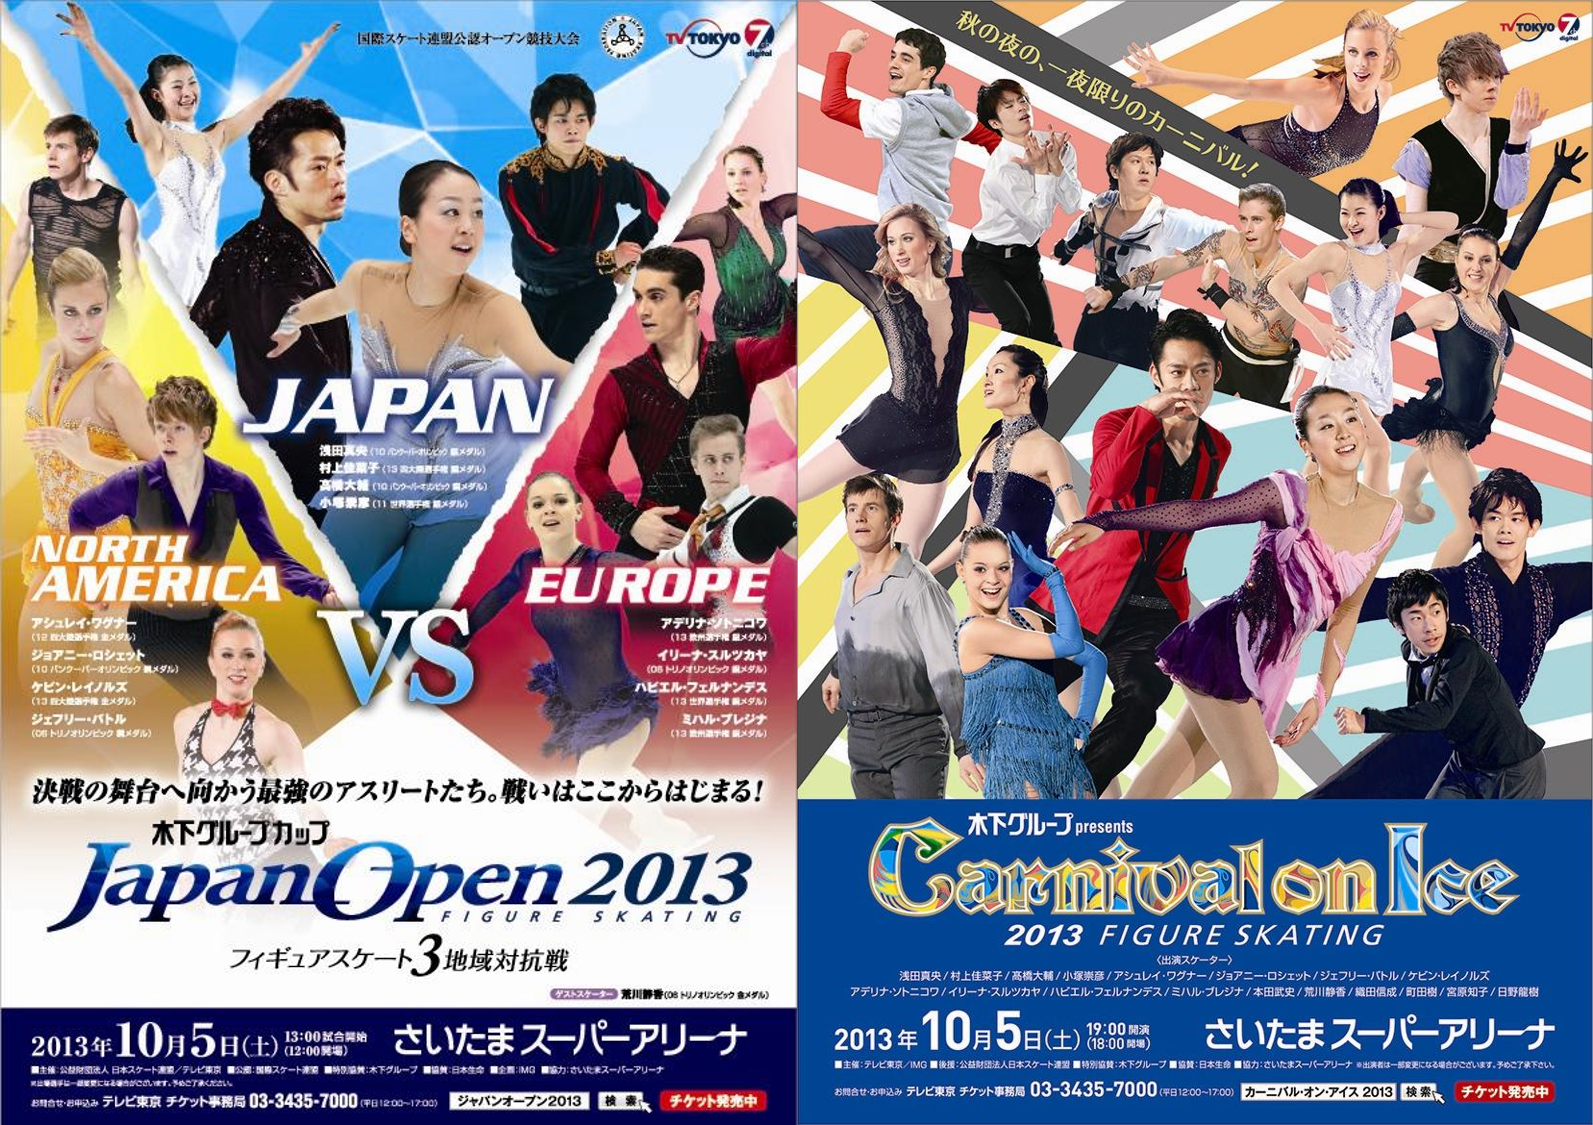 ジャパンオープン カーニバル オン アイス2013を開催 Img スポーツ イベント メディア ファッション分野のグローバル リーディングカンパニー